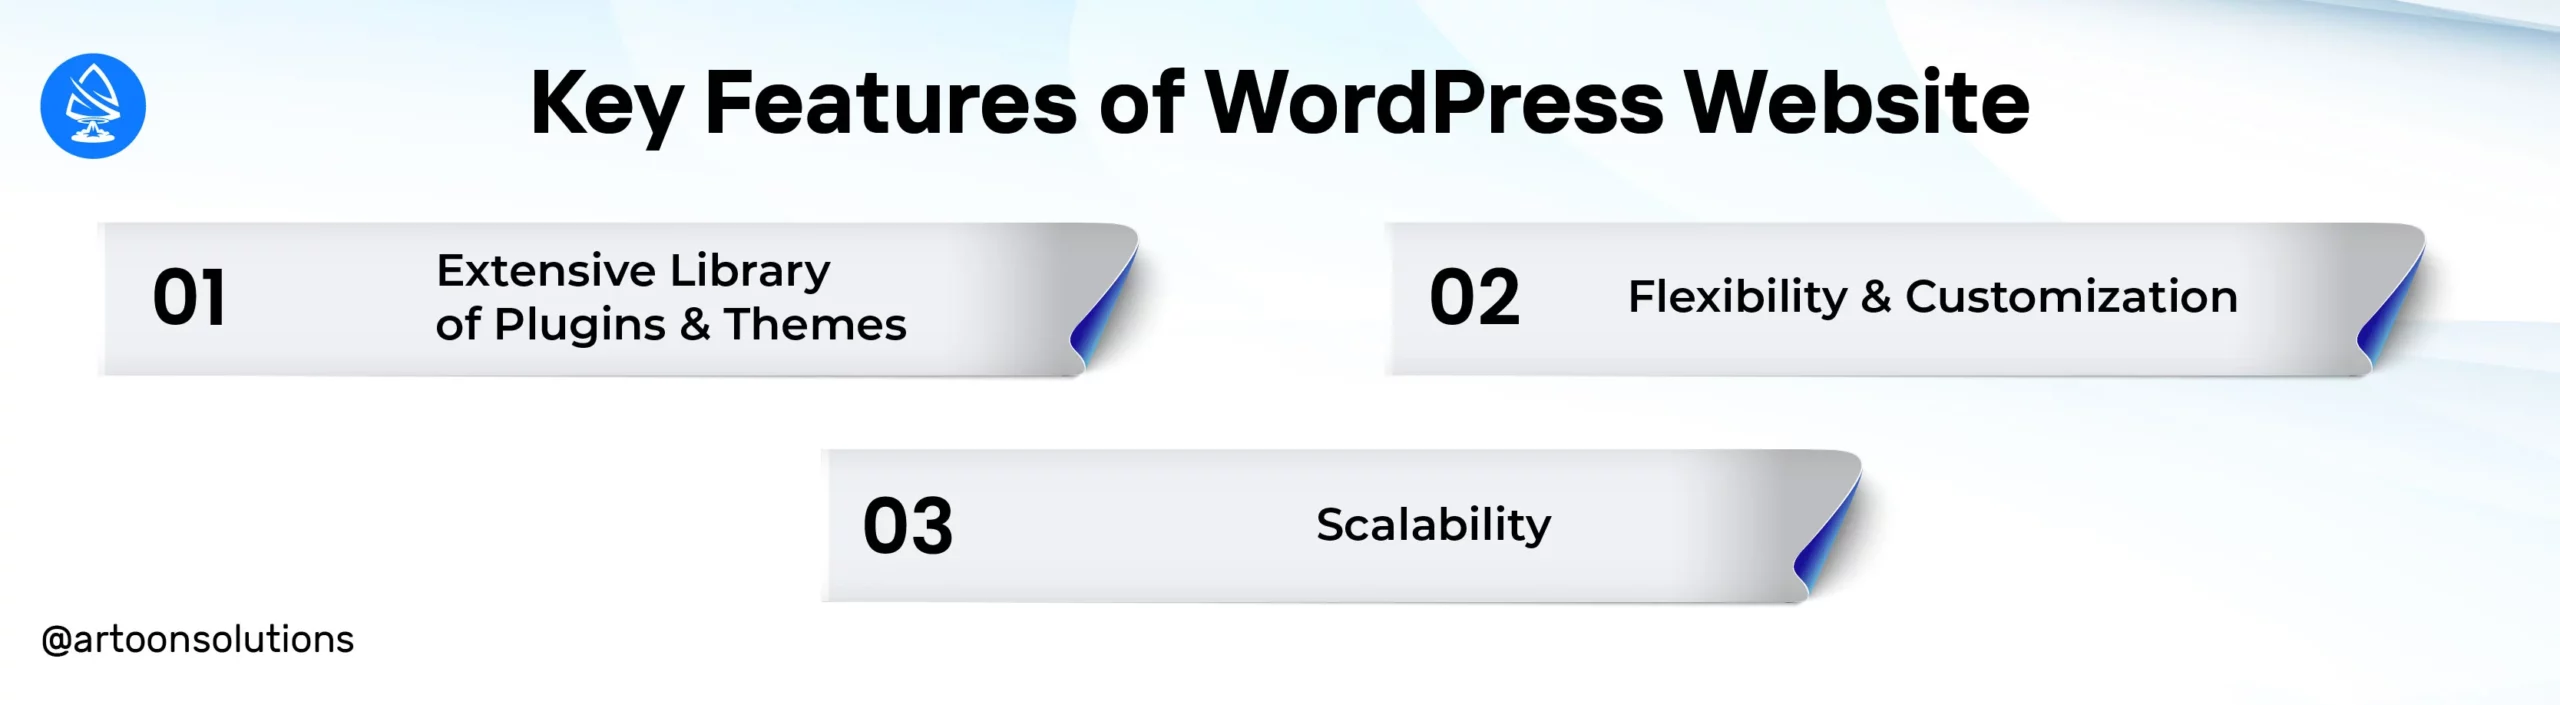 Key Features of WordPress Website 